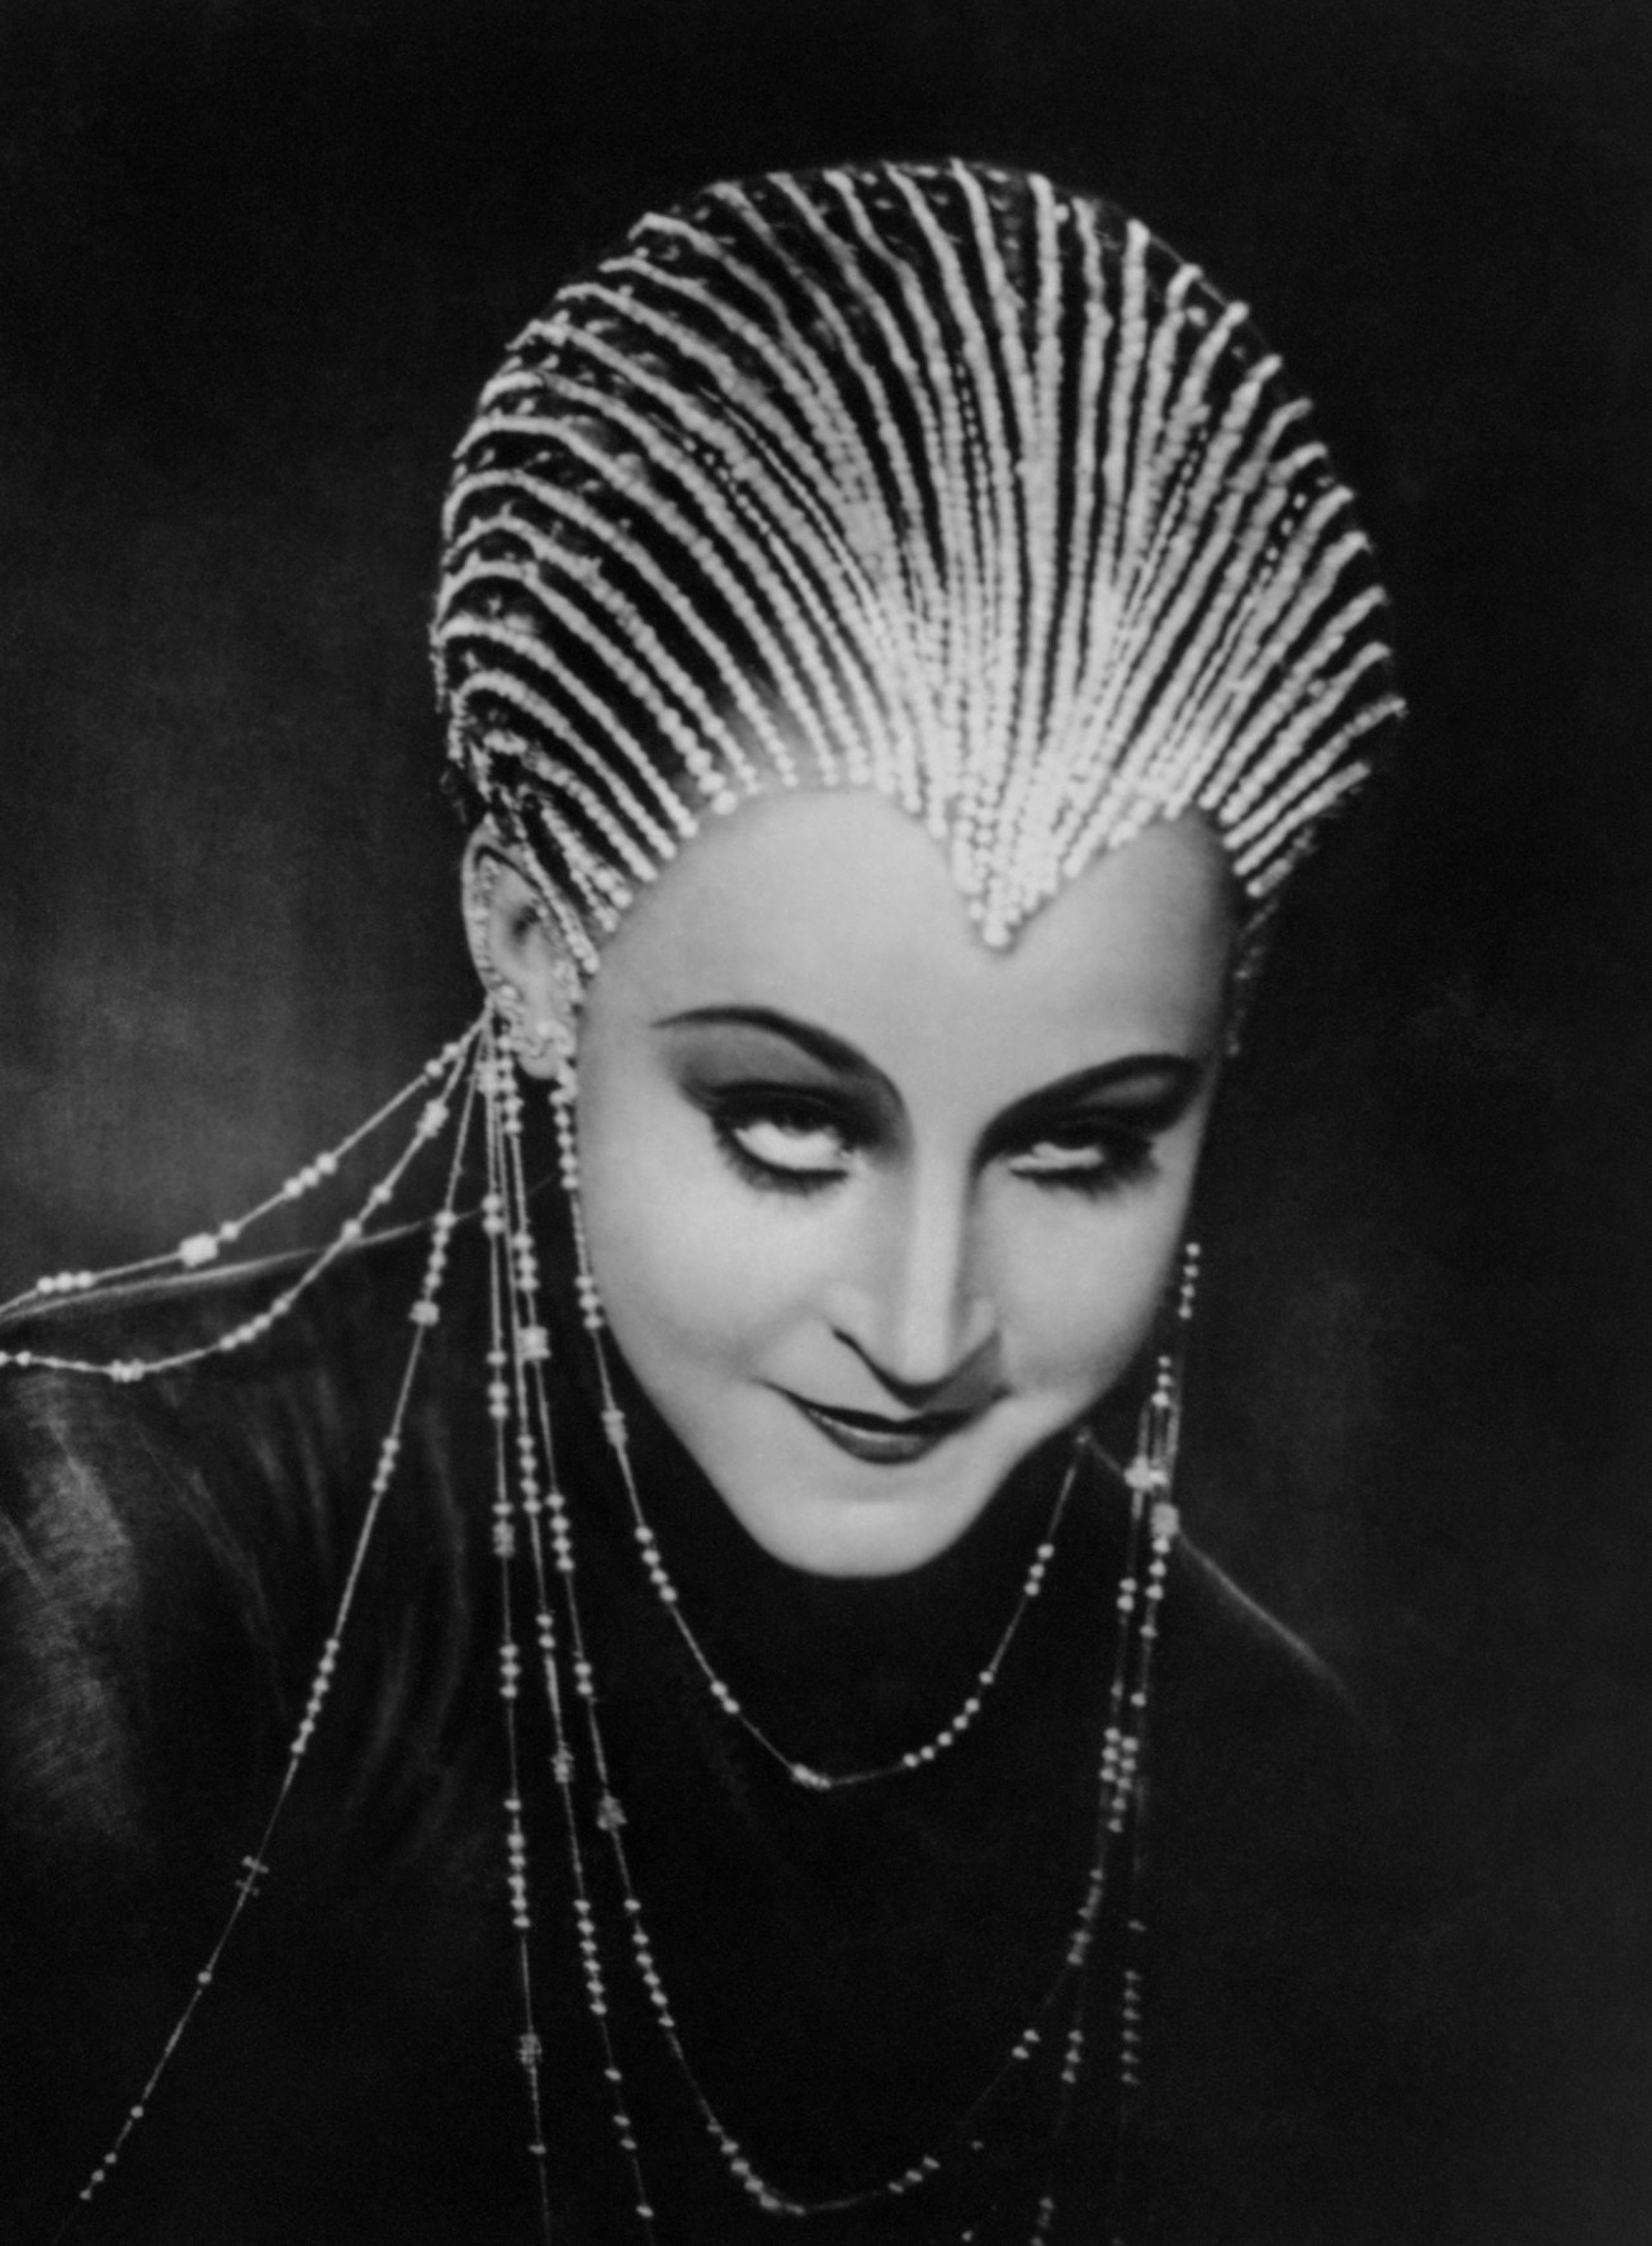 L'attrice Brigitte Helm in una scena di Metropolis, 1927